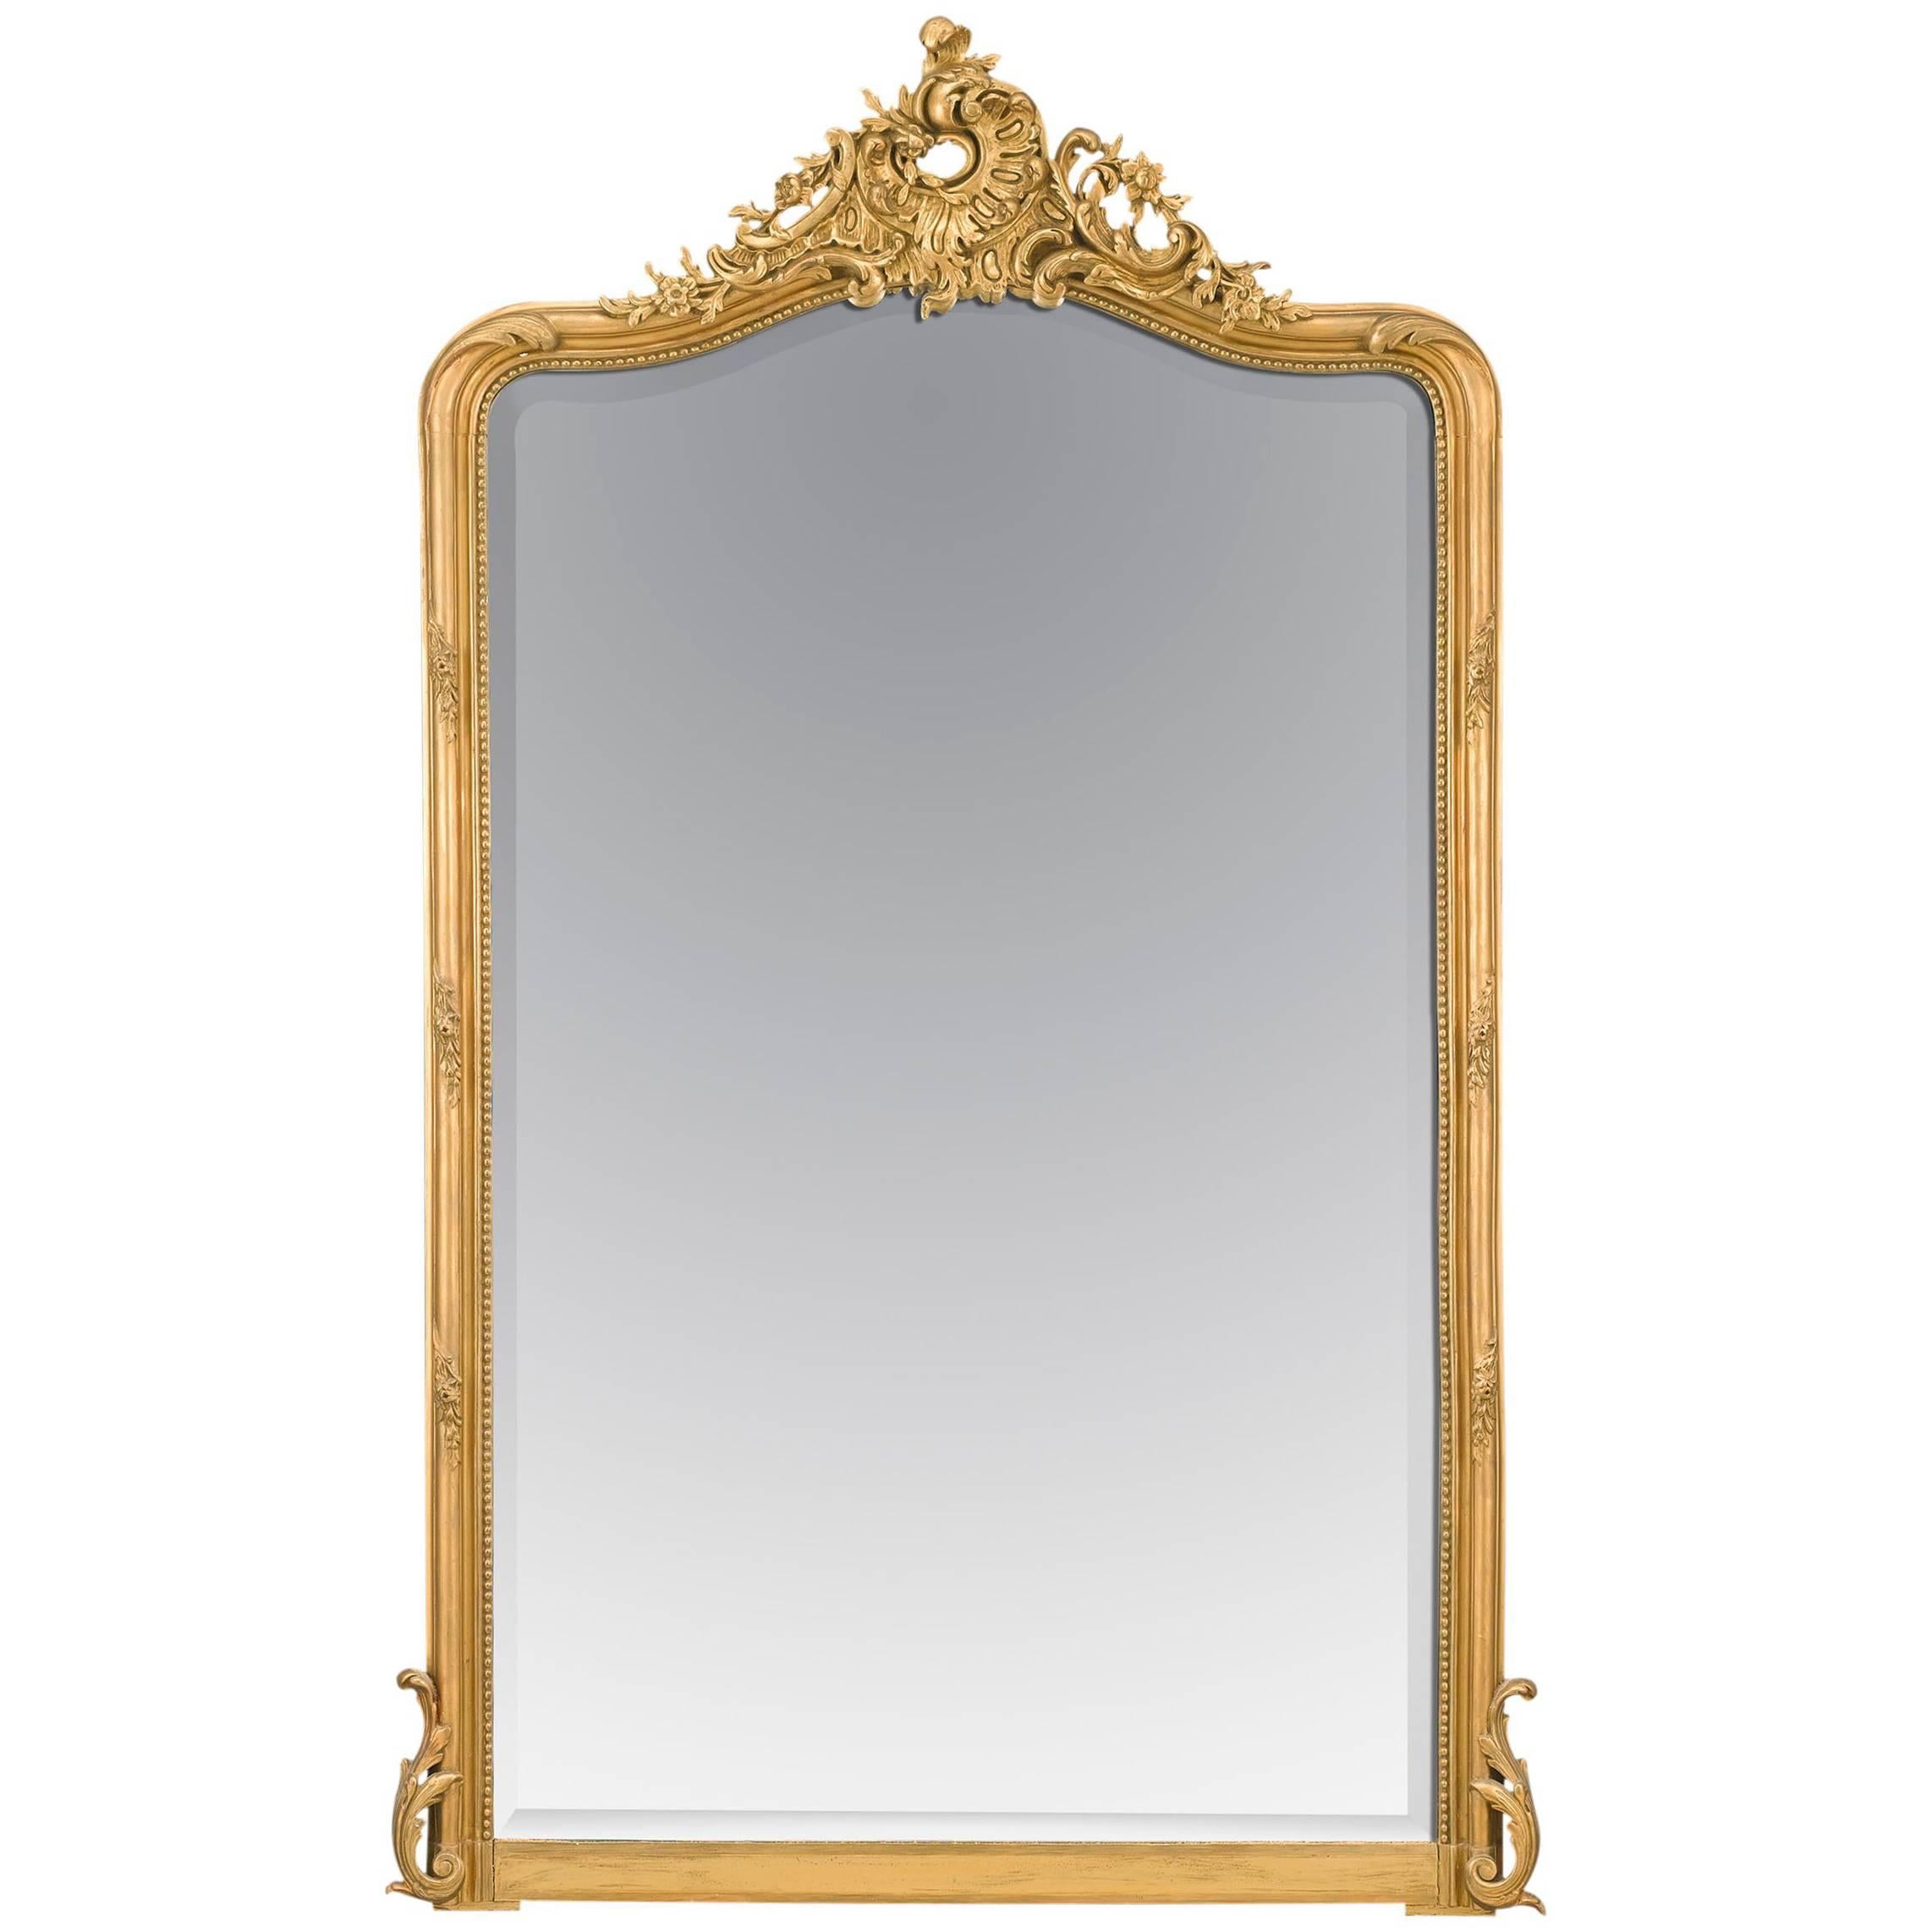 French Louis XV Style Mirror